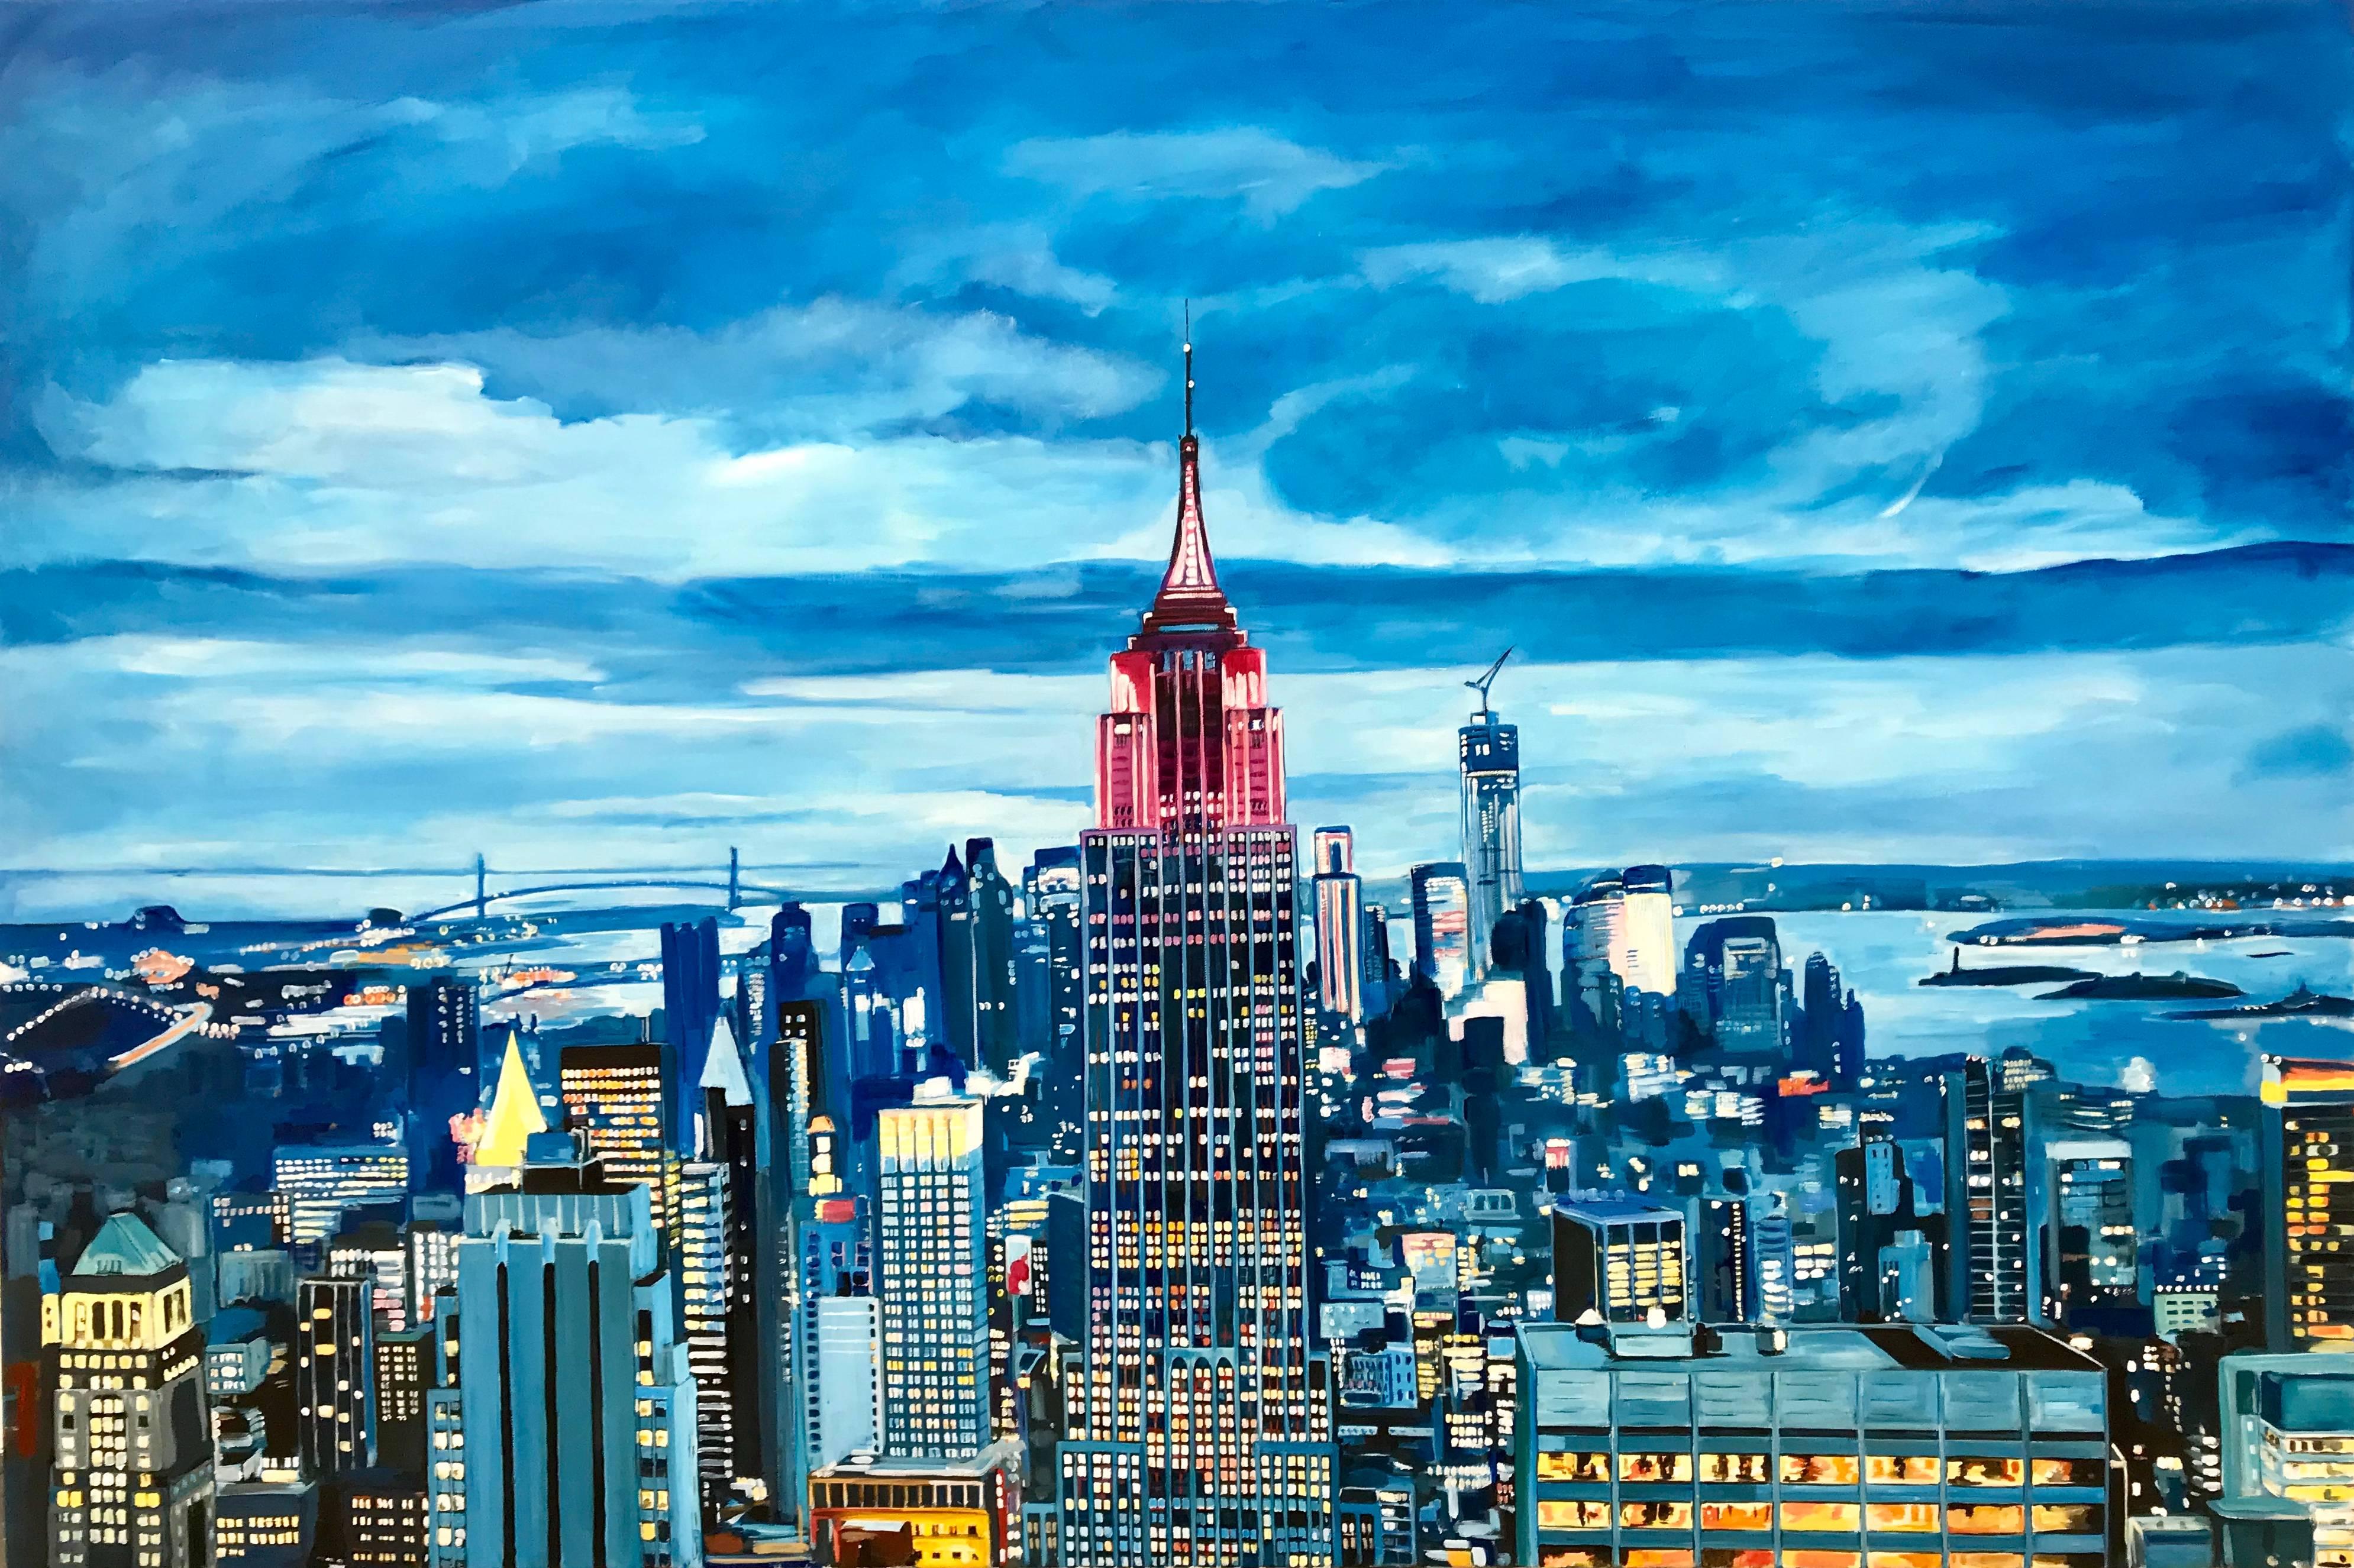 Landscape Painting Angela Wakefield - Peinture de paysage urbain de l'État de l'Empire à Manhattan, New York, par un artiste paysagiste britannique